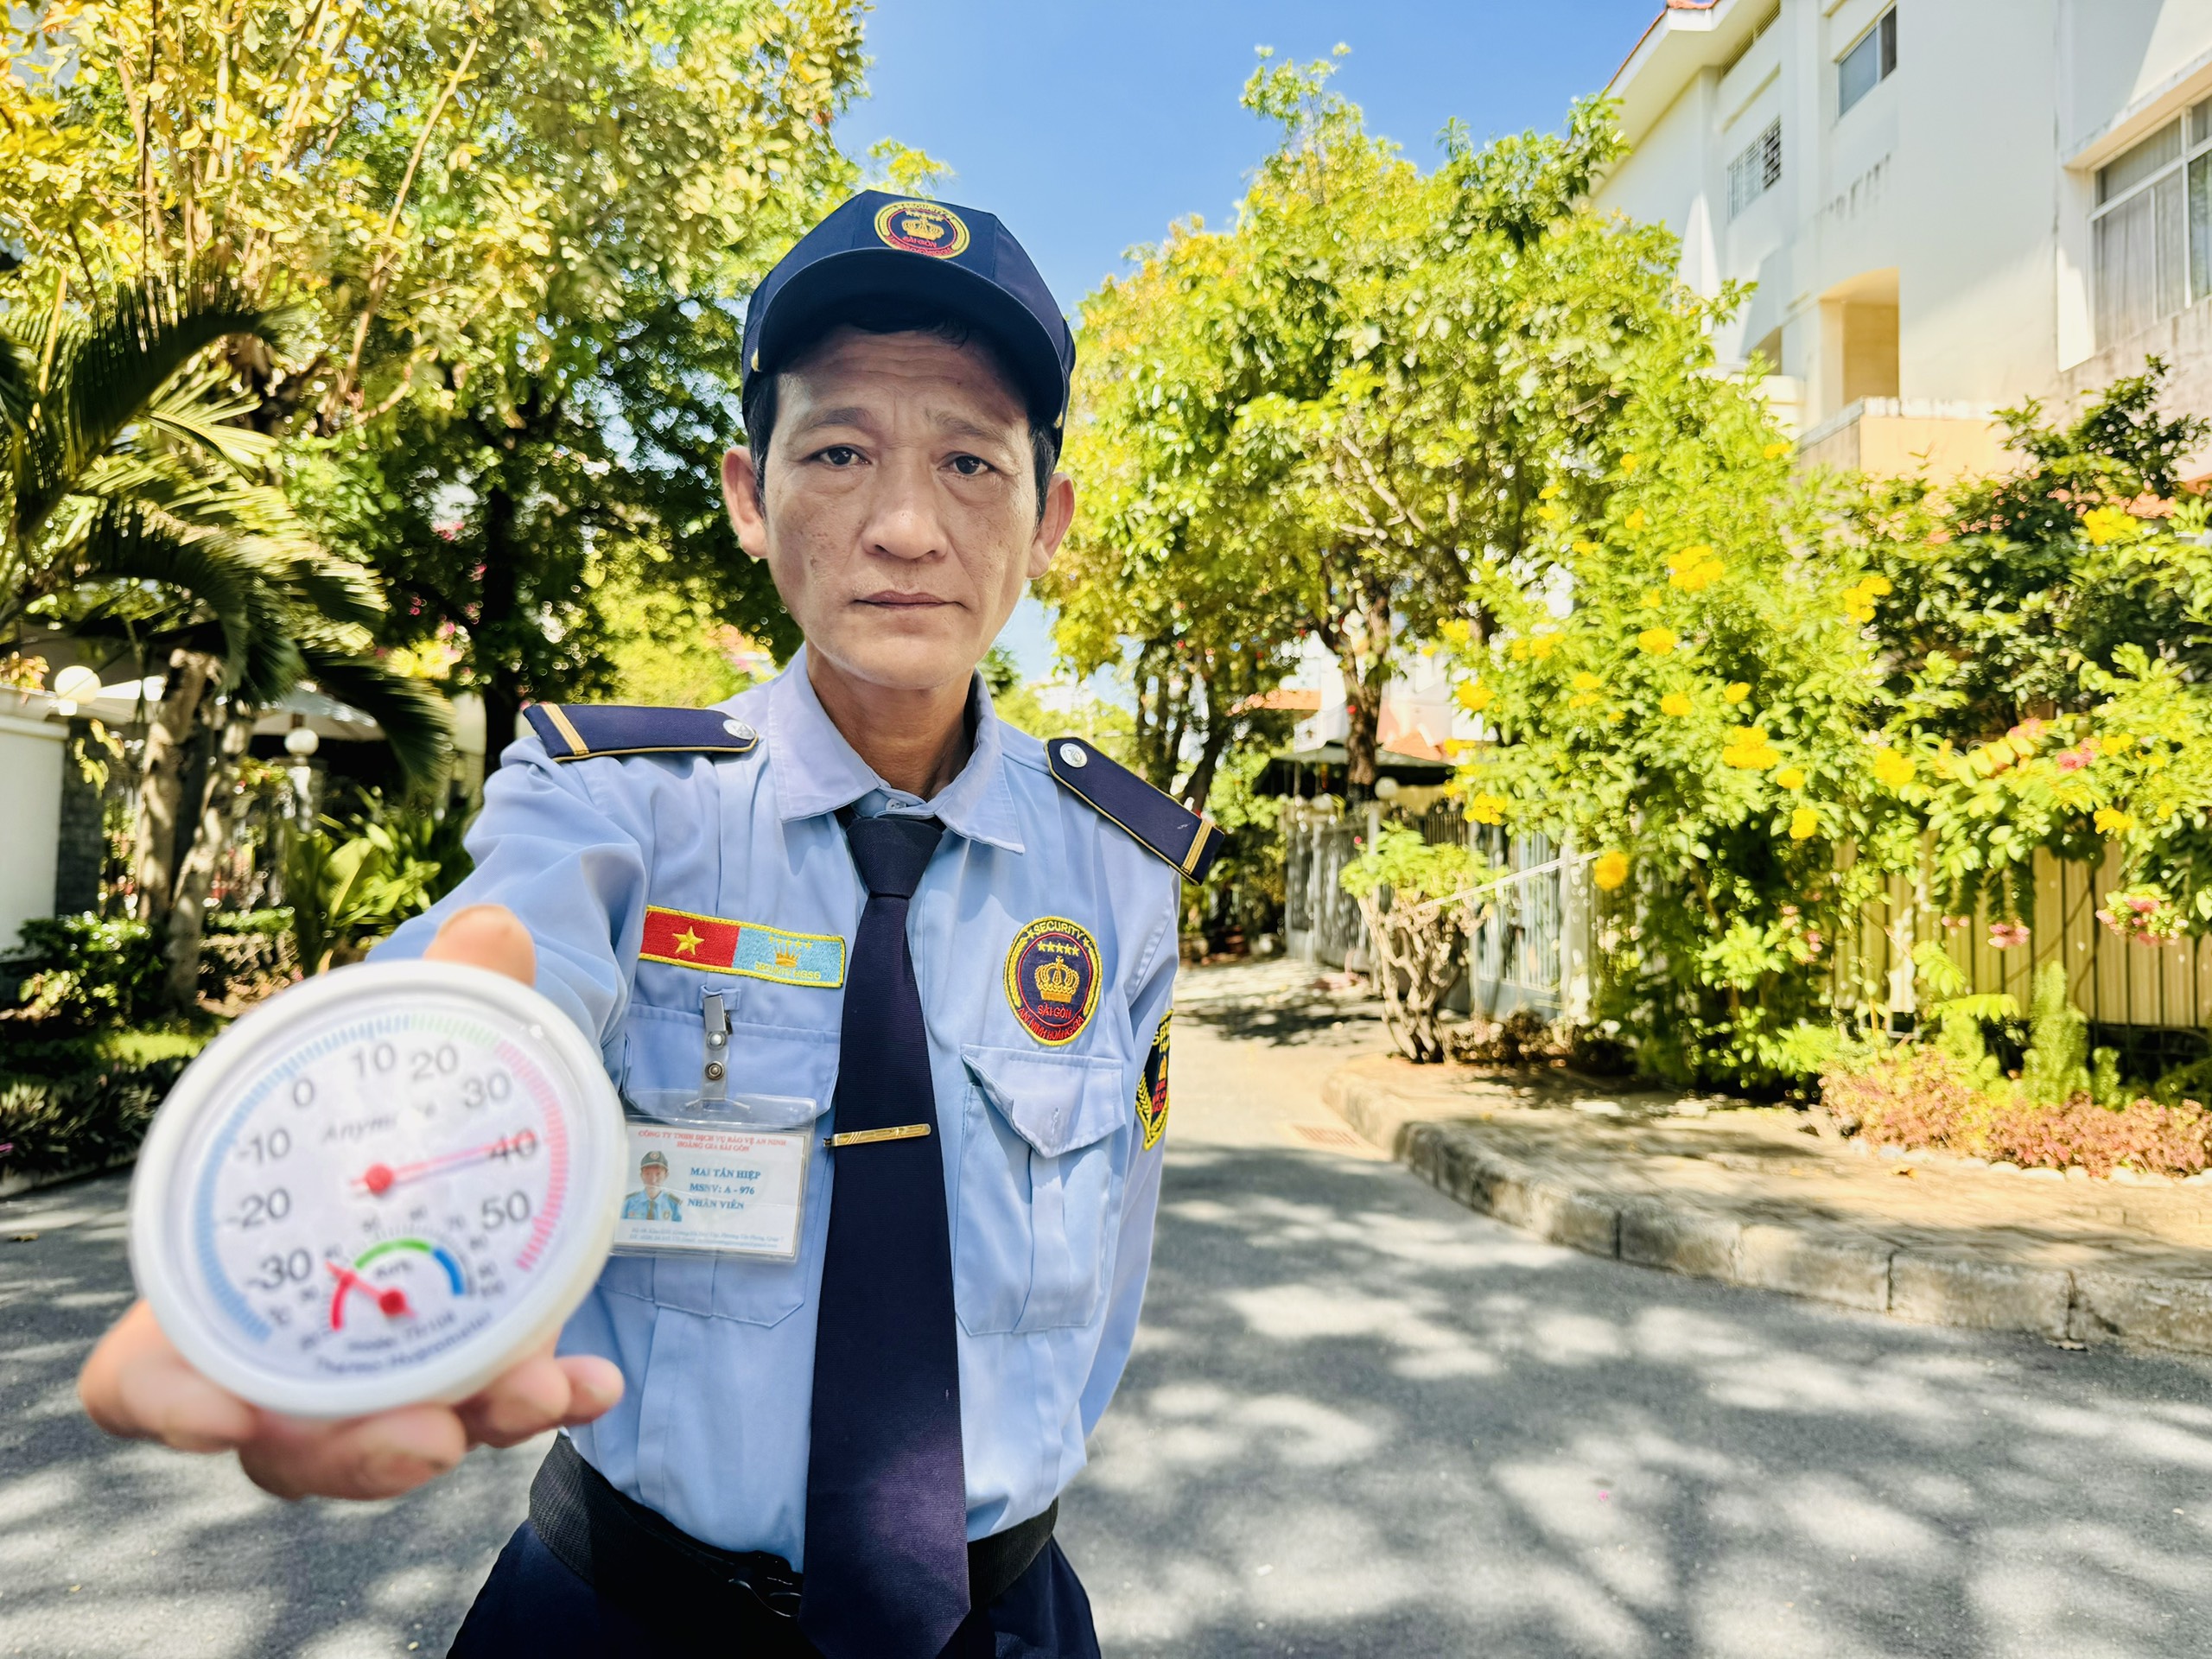 Ông Mai Tấn Hiệp (49 tuổi), một nhân viên bảo vệ cho biết, so với khu vực trung tâm, nhiệt độ ở những nơi có cây xanh như khu Phú Mỹ Hưng (Q.7) thấp hơn vài độ, cũng cảm thấy dễ thở hơn